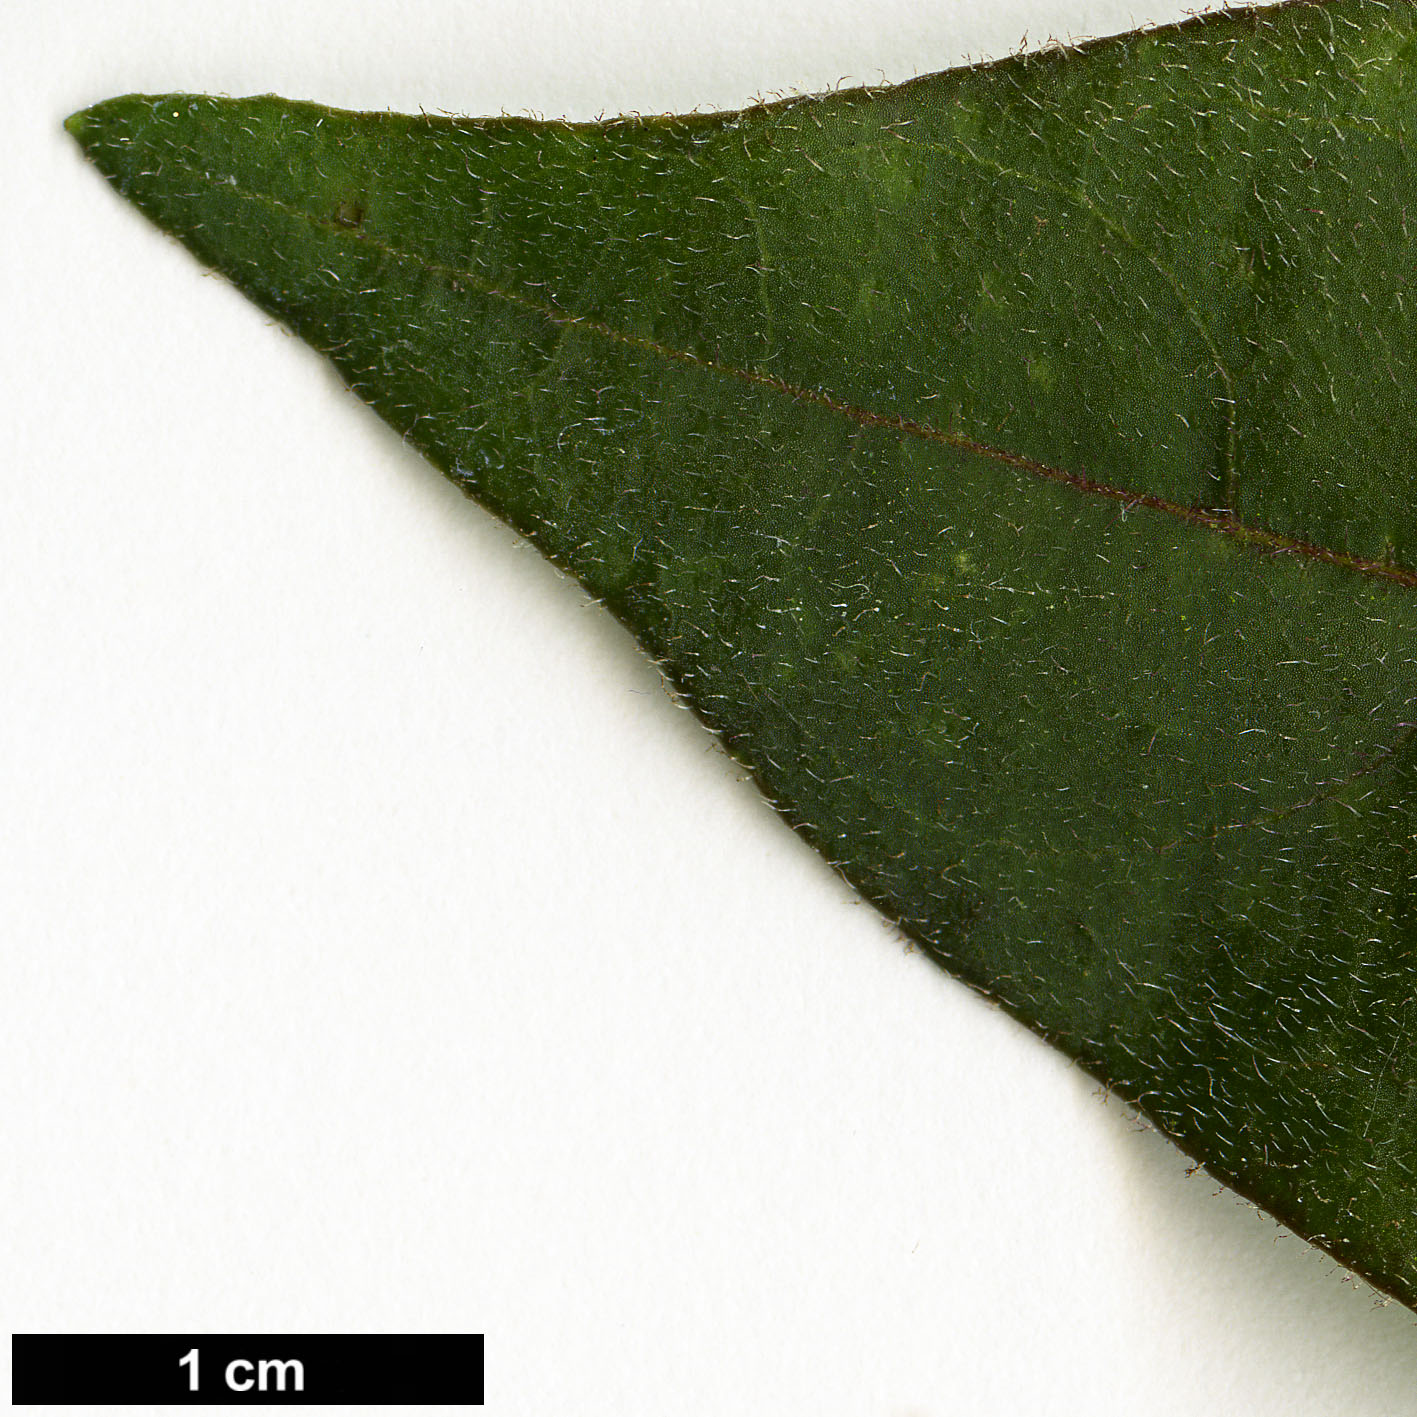 High resolution image: Family: Solanaceae - Genus: Cestrum - Taxon: elegans